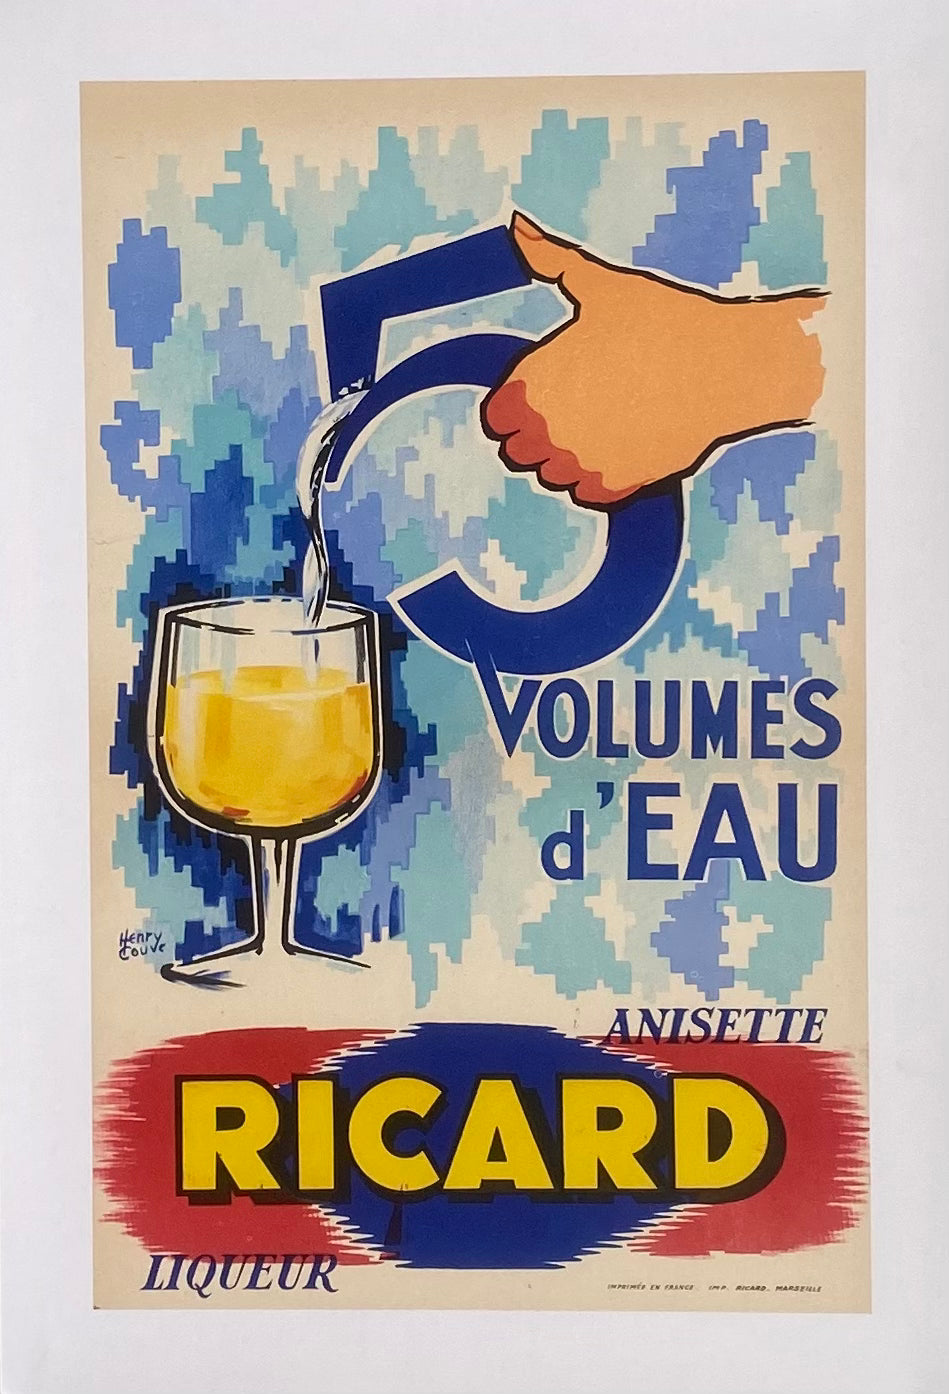 Affiche Originale Pastis Ricard 51 Volumes d'Eau - Henry Couve 1950